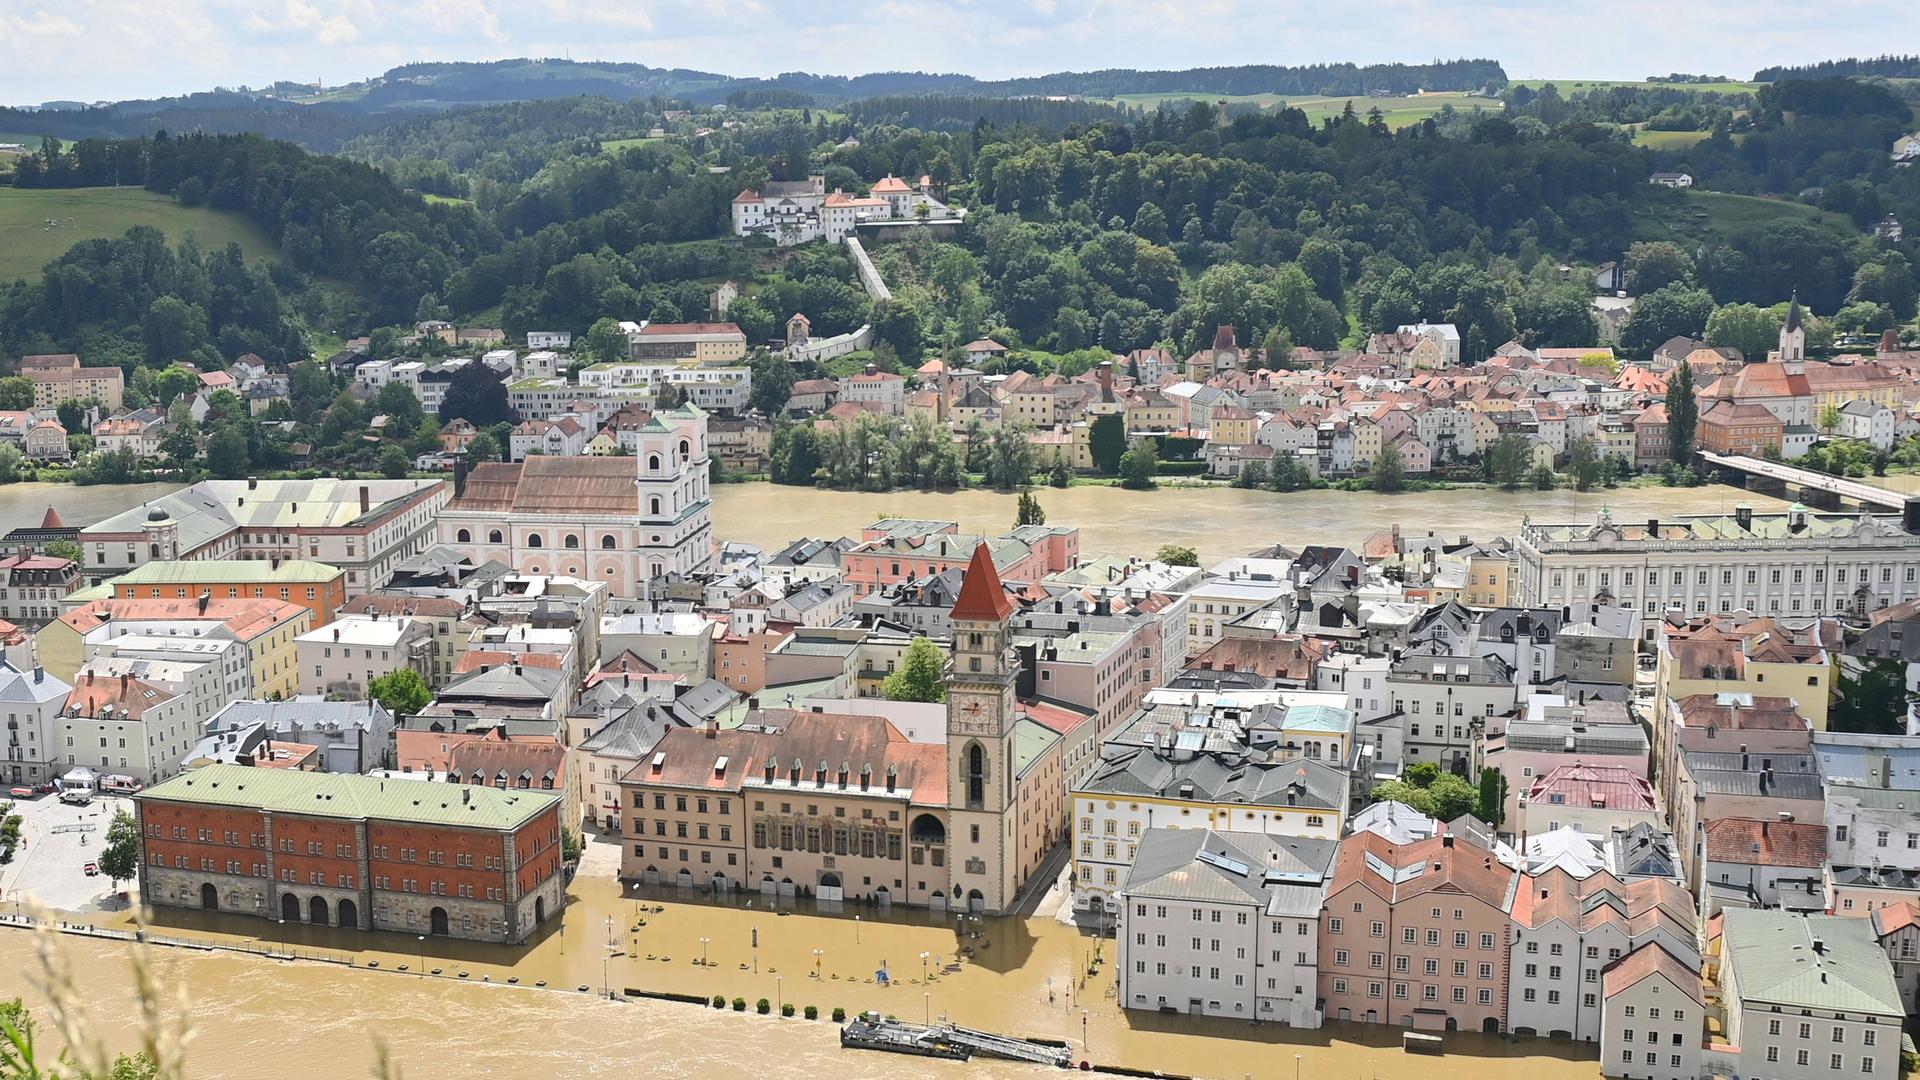 Von einem Hügel aus sieht man die Altstadt von Regensbrug. Sie steht beinahe komplett unter Wasser.